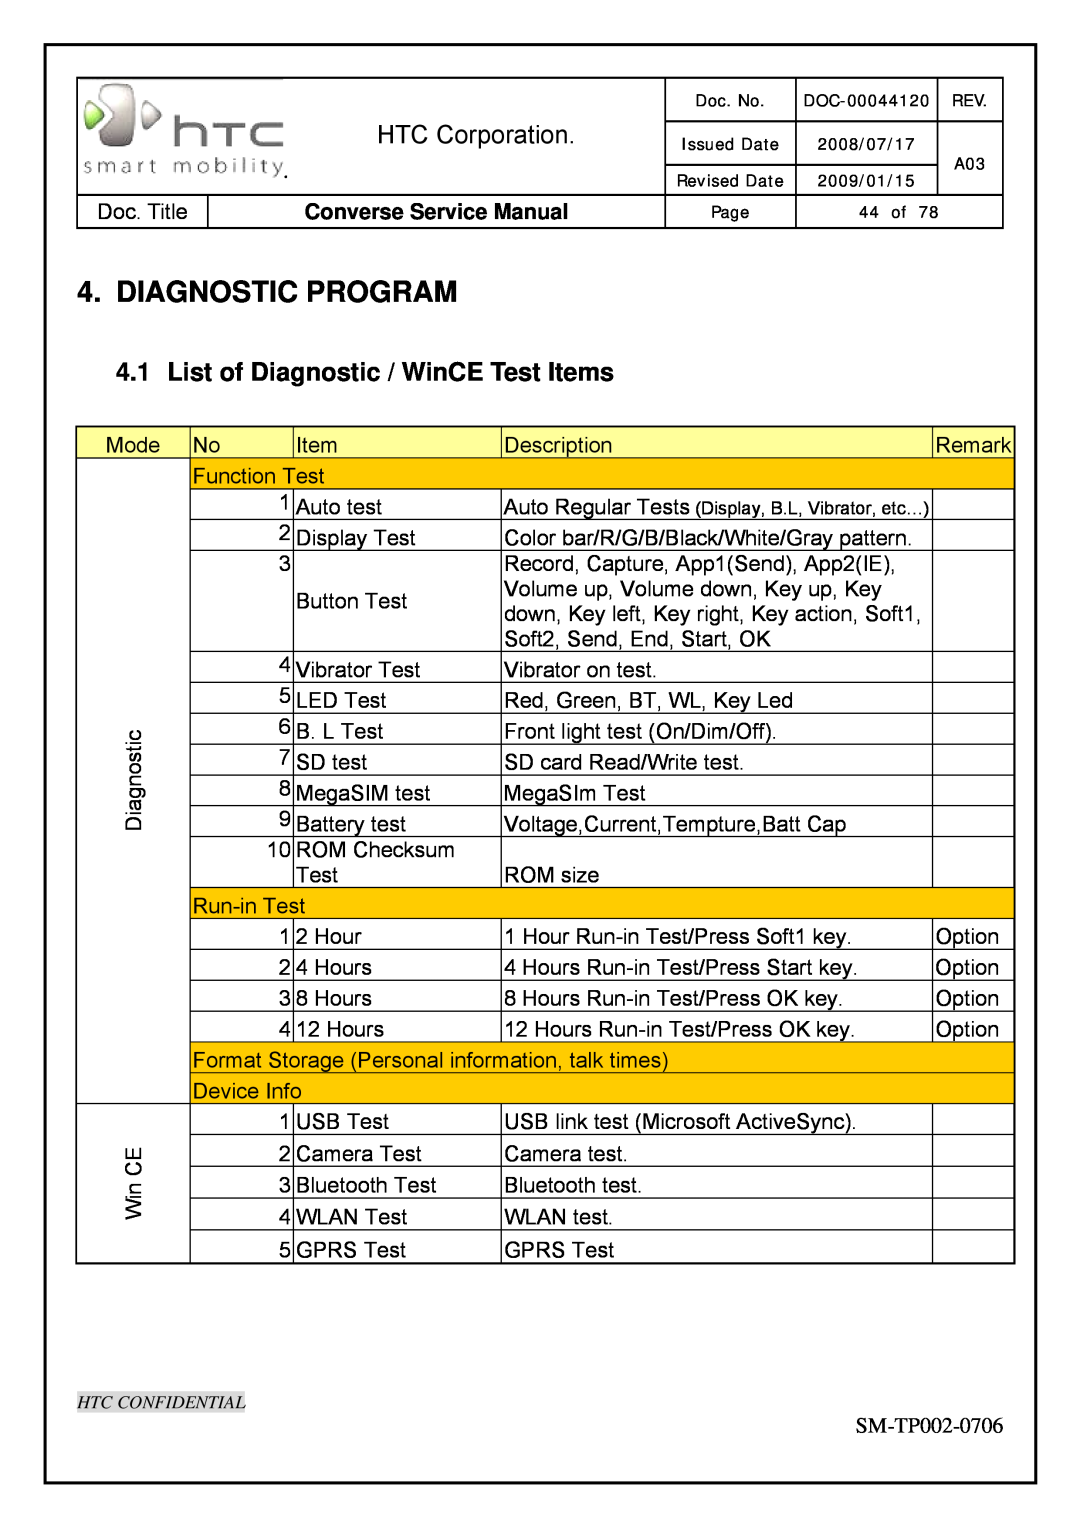 HTC SM-TP002-0706 Diagnostic Program, List of Diagnostic / WinCE Test Items, HTC Corporation, Converse Service Manual 